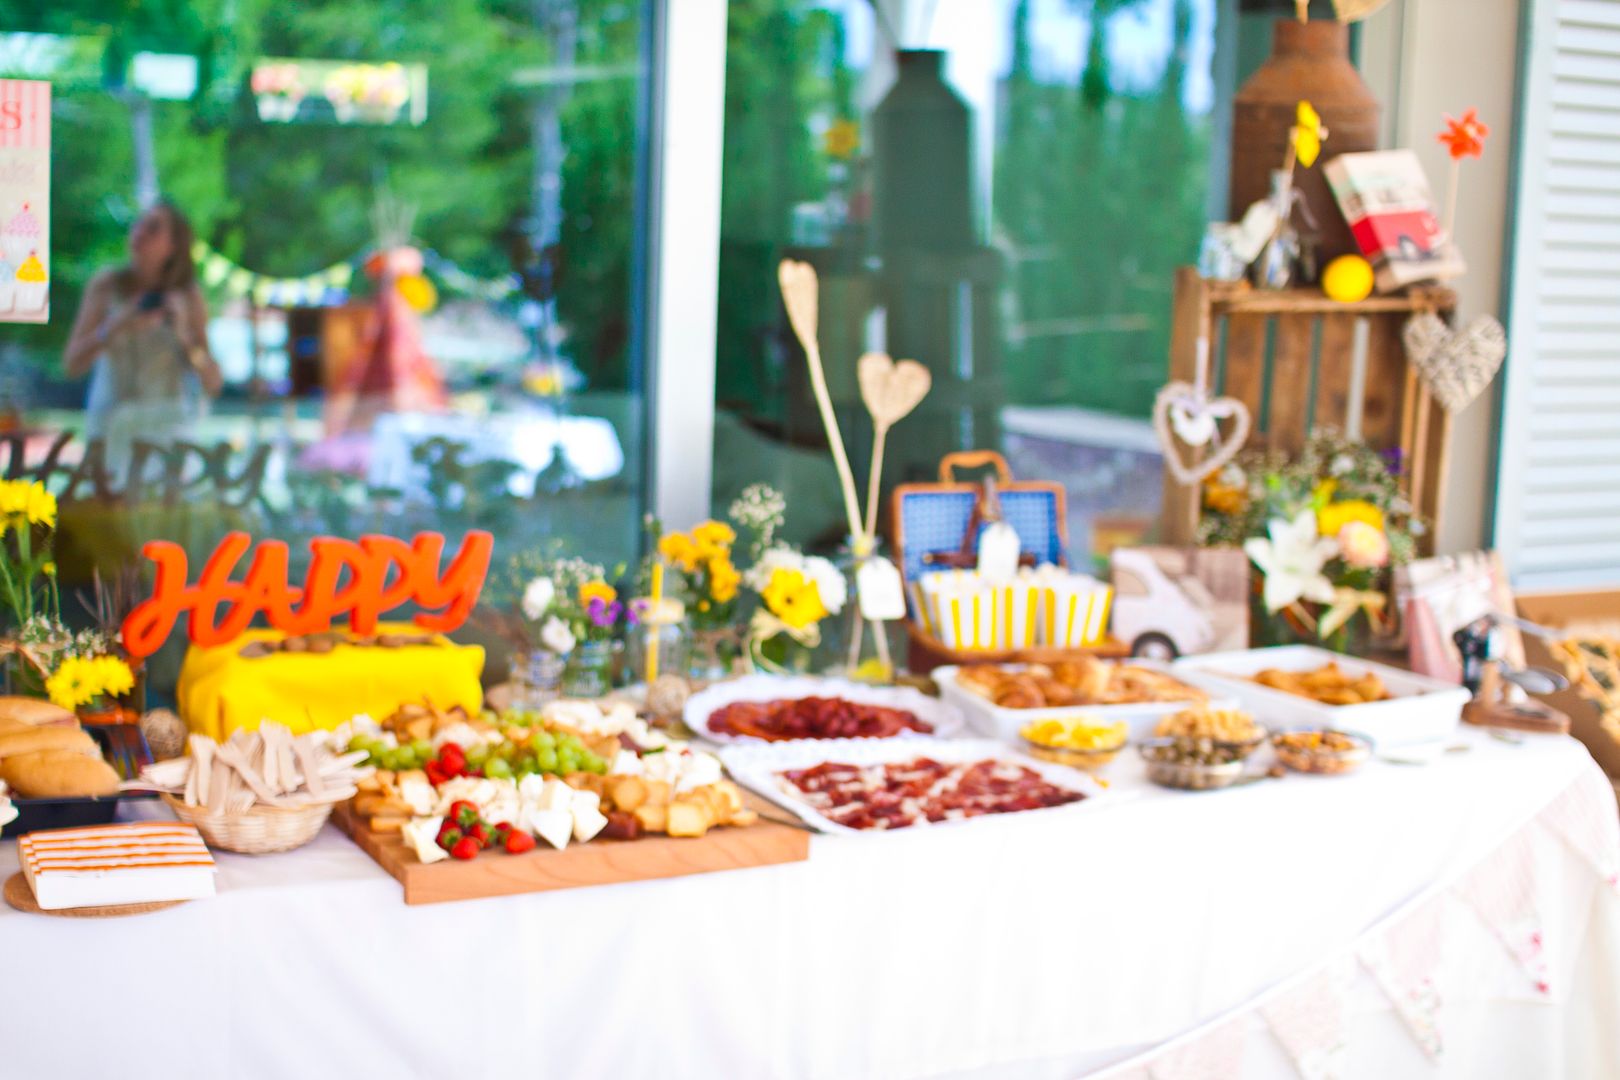  Decoración de mesa de comida en una boda folk hippy